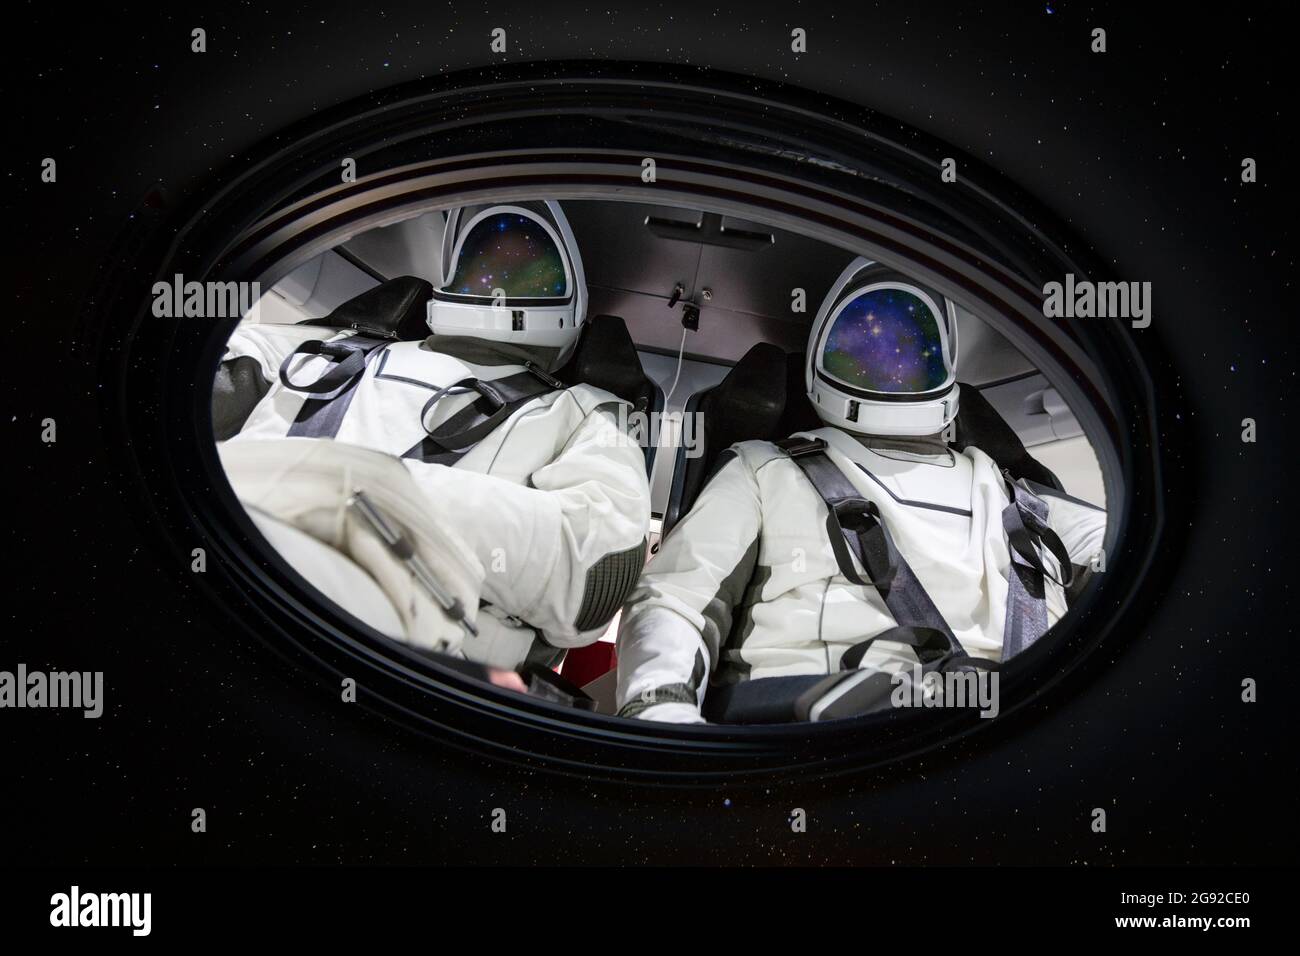 Zwei Astronauten im Bullauge im All. Elemente dieses Bildes, die von der NASA eingerichtet wurden. Stockfoto